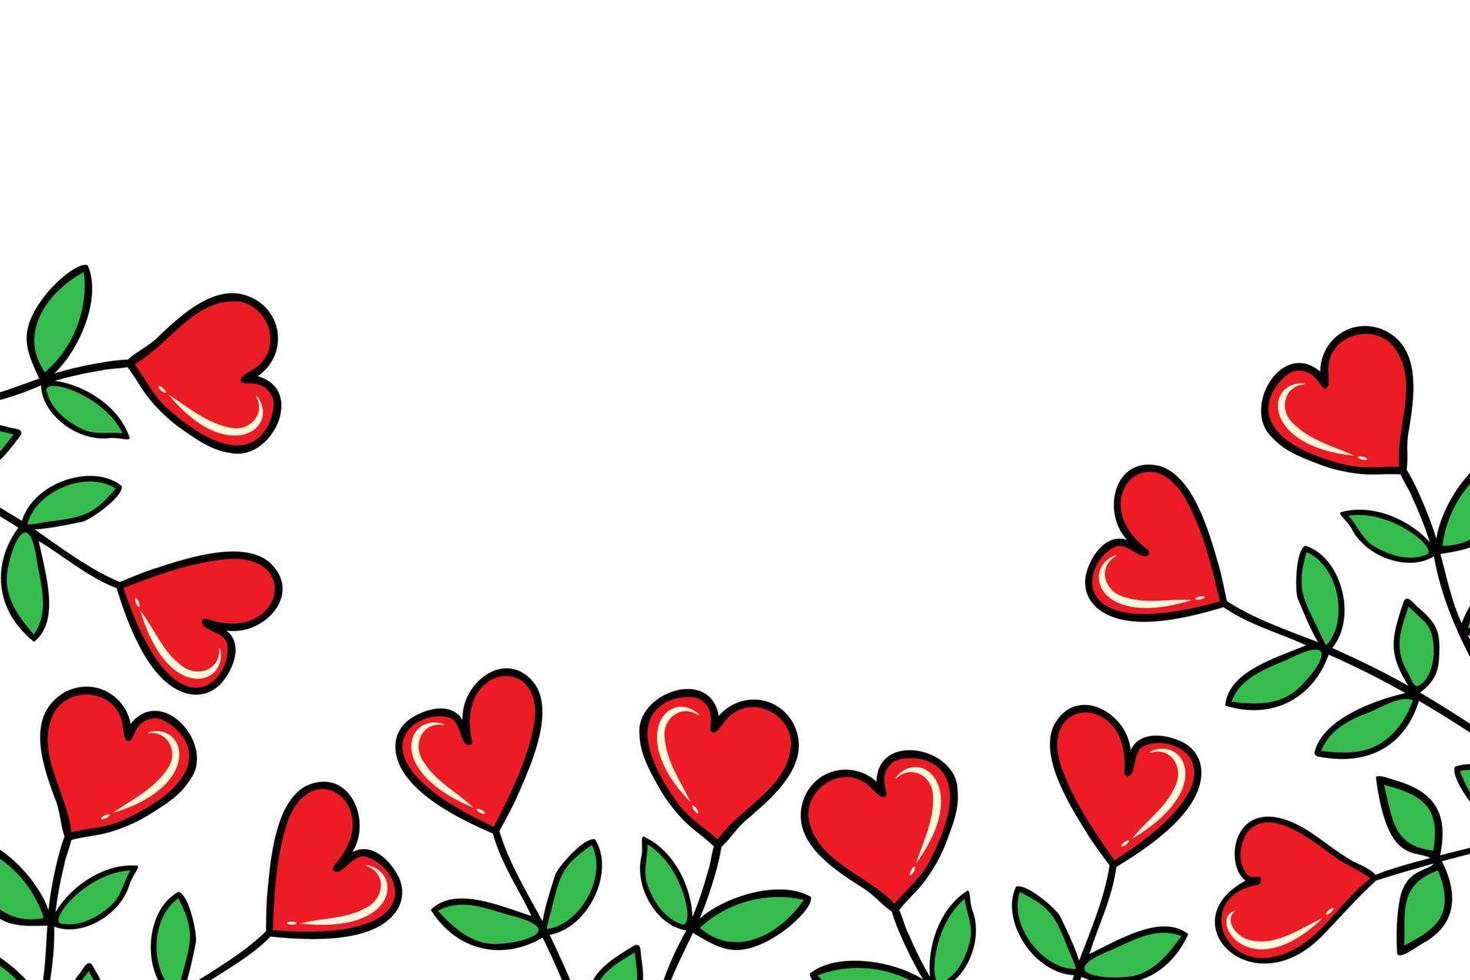 vector achtergrond met bladeren, hartvormig bloemen en een plaats voor uw tekst. rechthoekig patroon voor decoratie voor Valentijnsdag dag. doodle-stijl kader met planten voor spandoeken, ansichtkaarten, uitnodiging